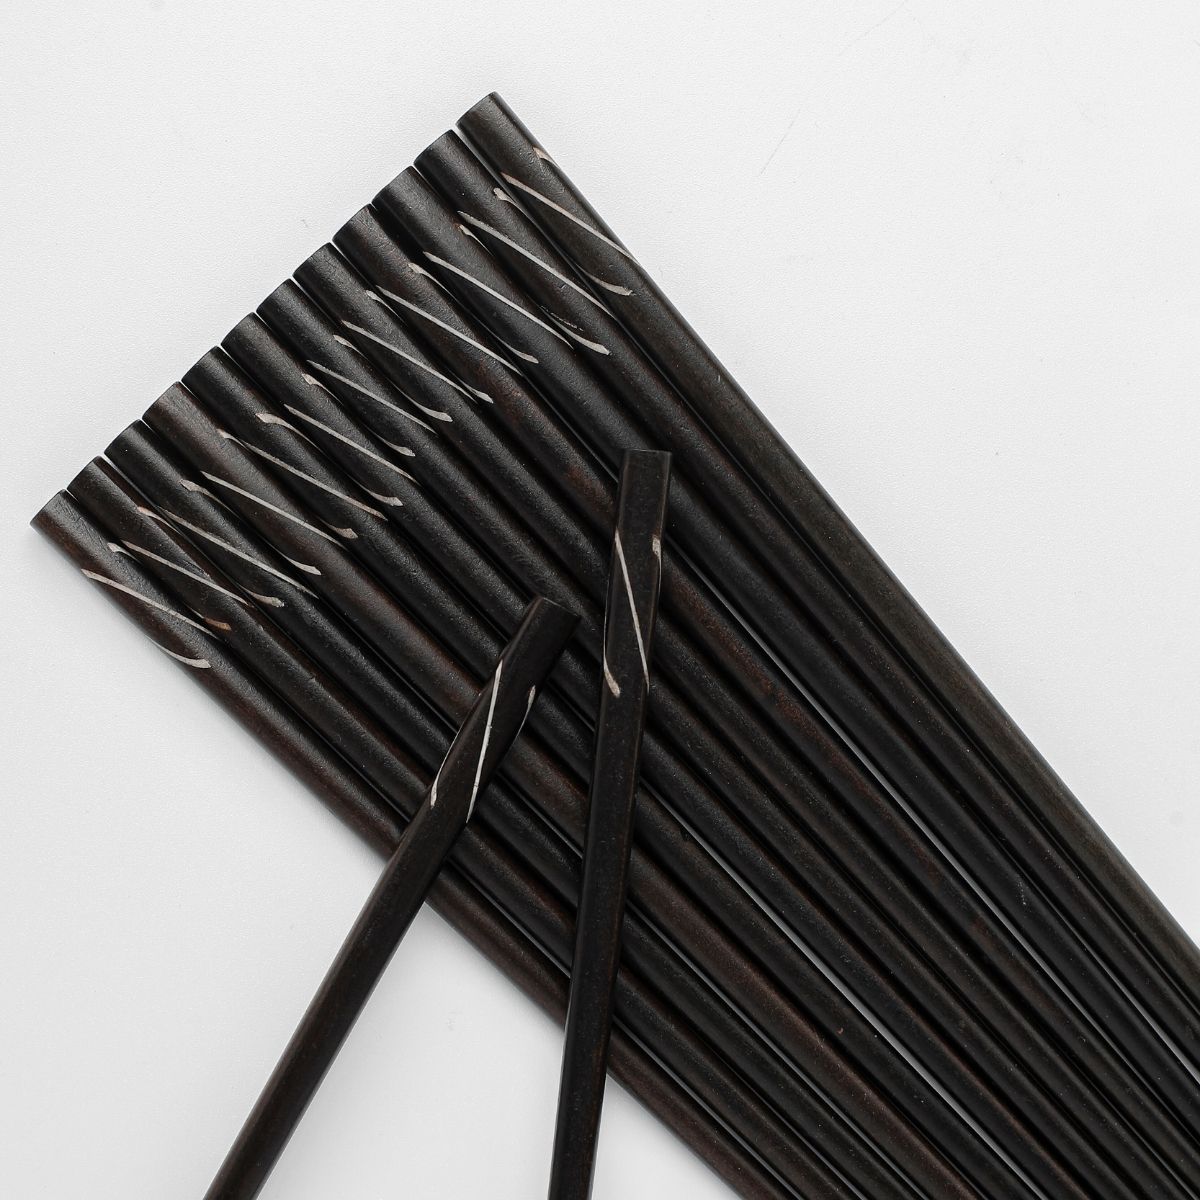 Vỉ 10 đôi đũa cẩm xoắn PHUSANG được làm từ gỗ tự nhiên, không chất bảo quản dùng trong nhà hàng khách sạn